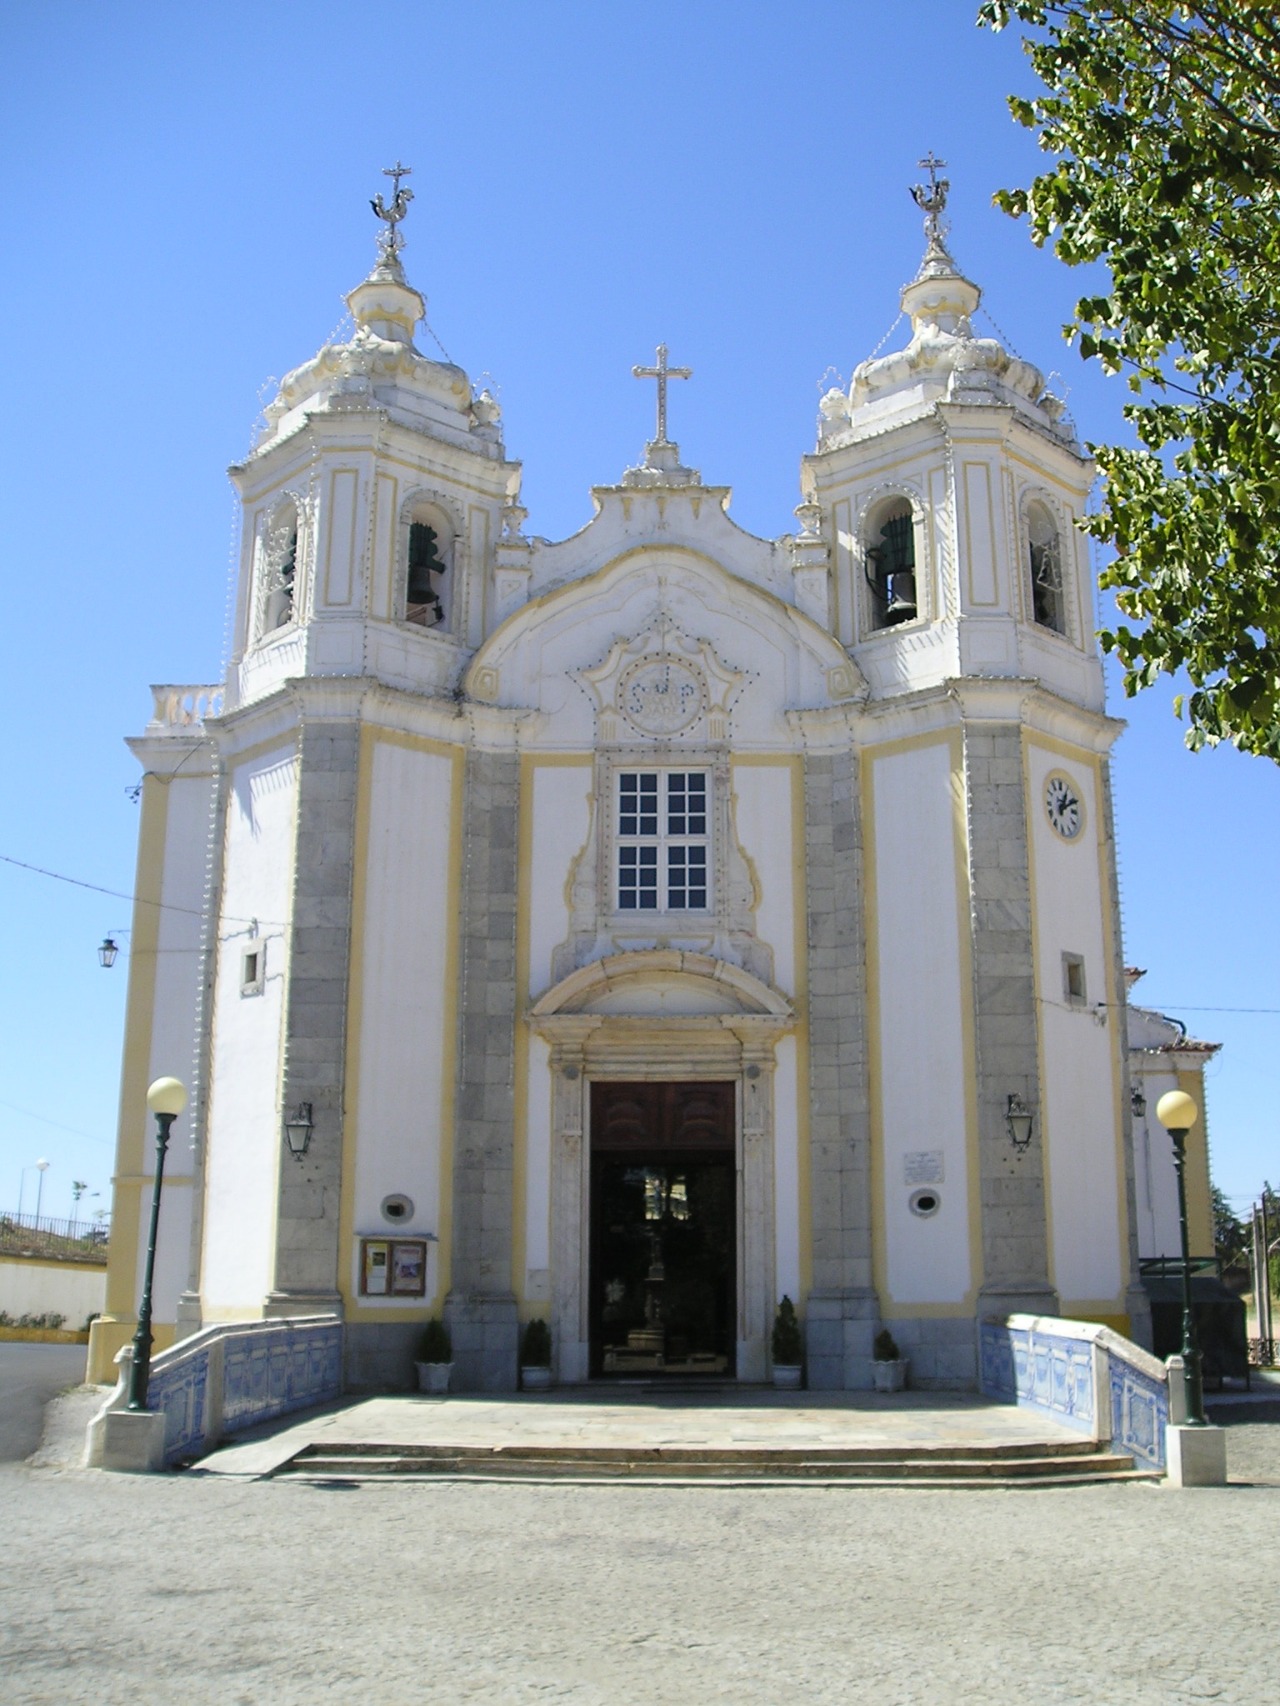 Sanctuary of the Lord Jesus of Mercy (Elvas)